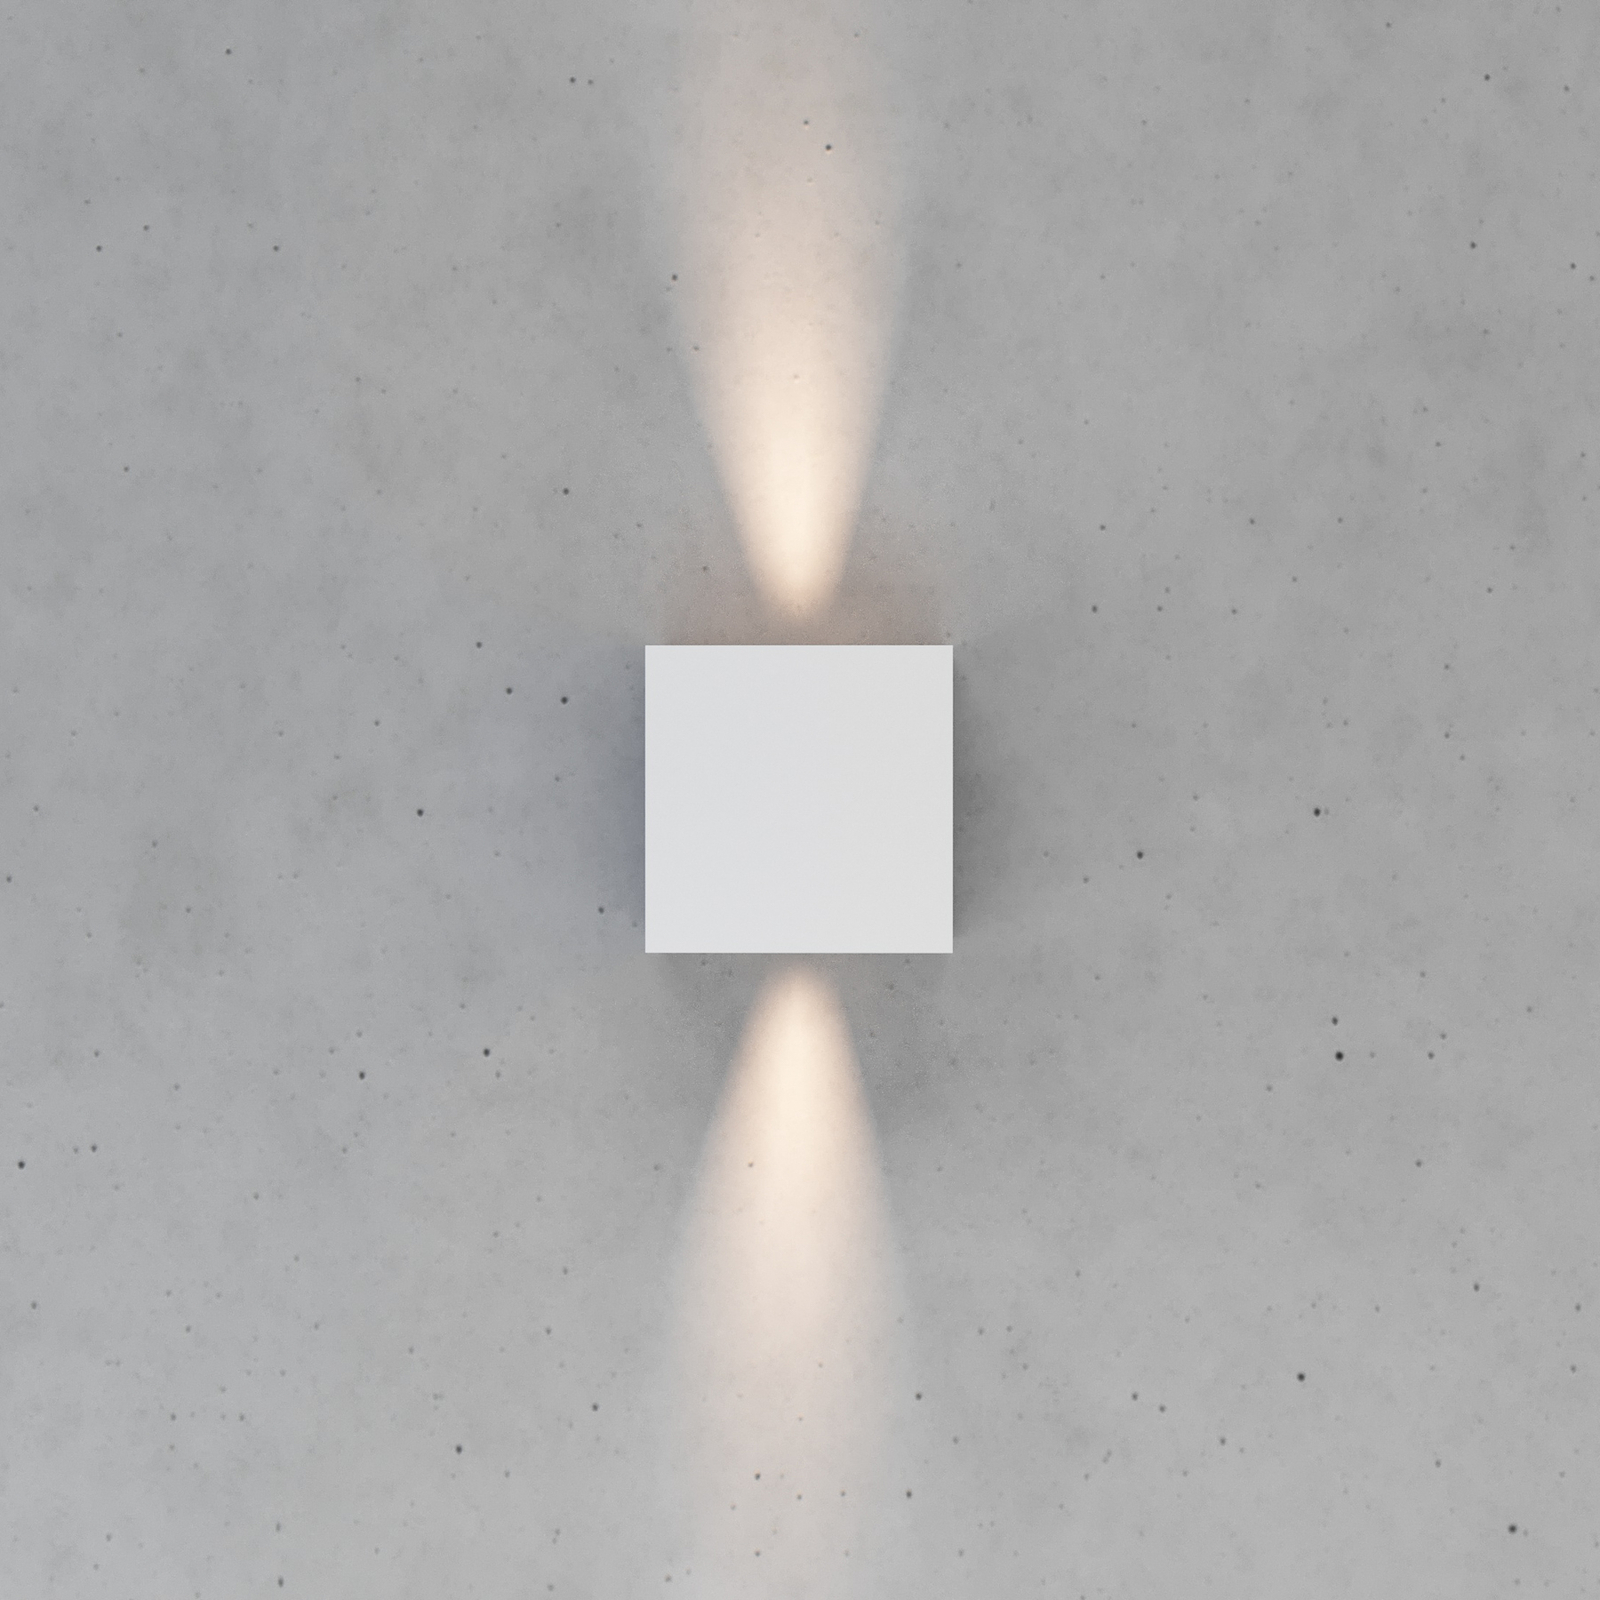 Zuza 2 zidna svjetiljka, bijela, metalna, četiri lamela, 10 cm, G9